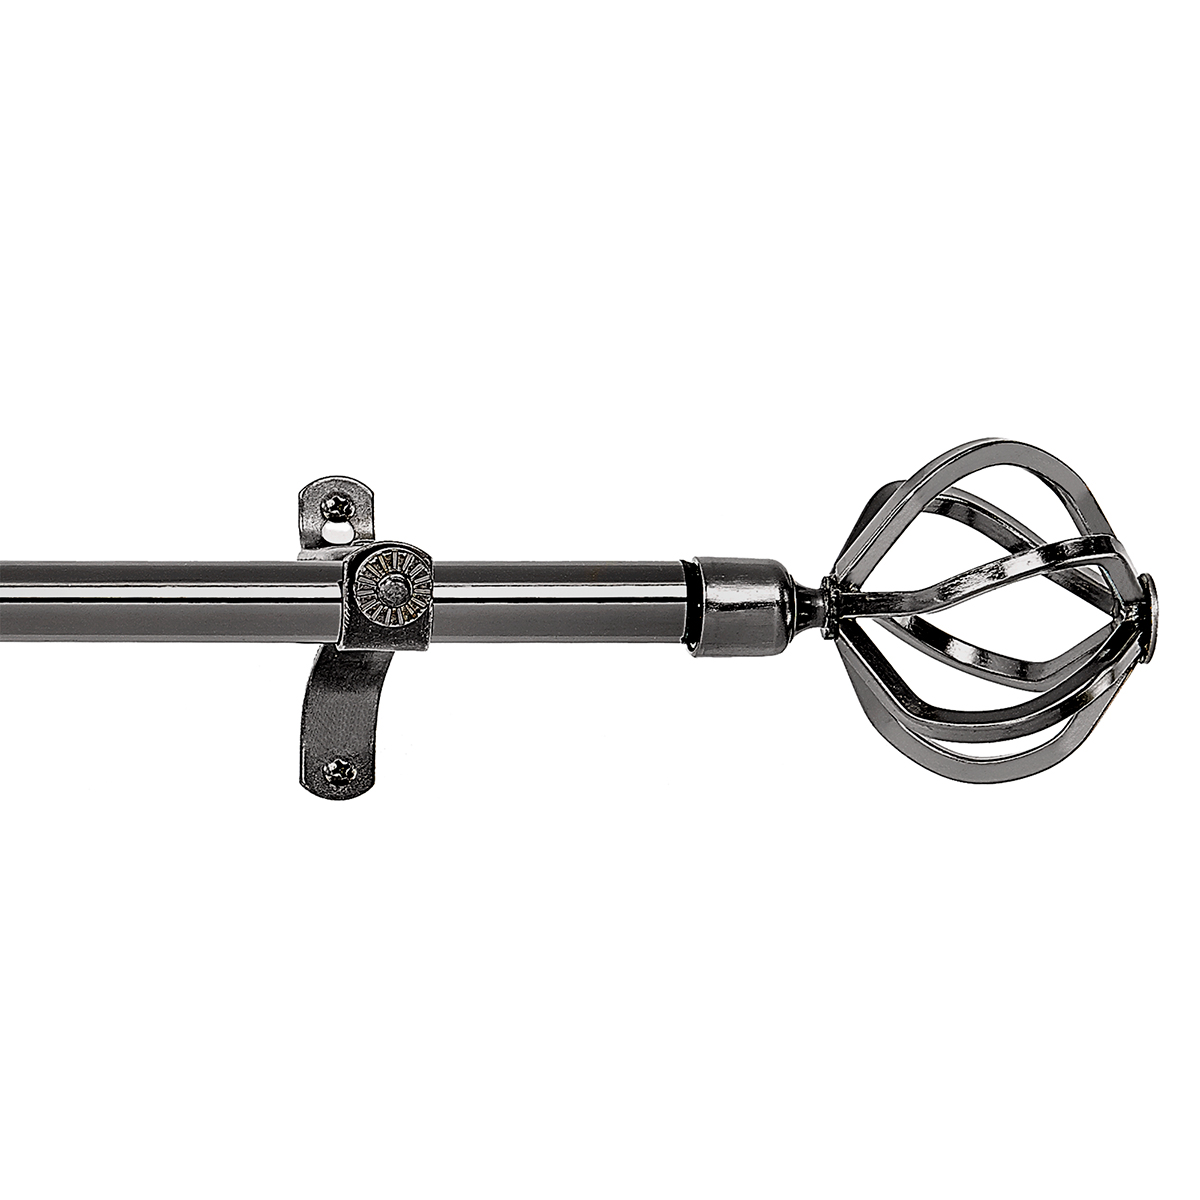 Achim Carrera Metallo Decorative Rod And Finial